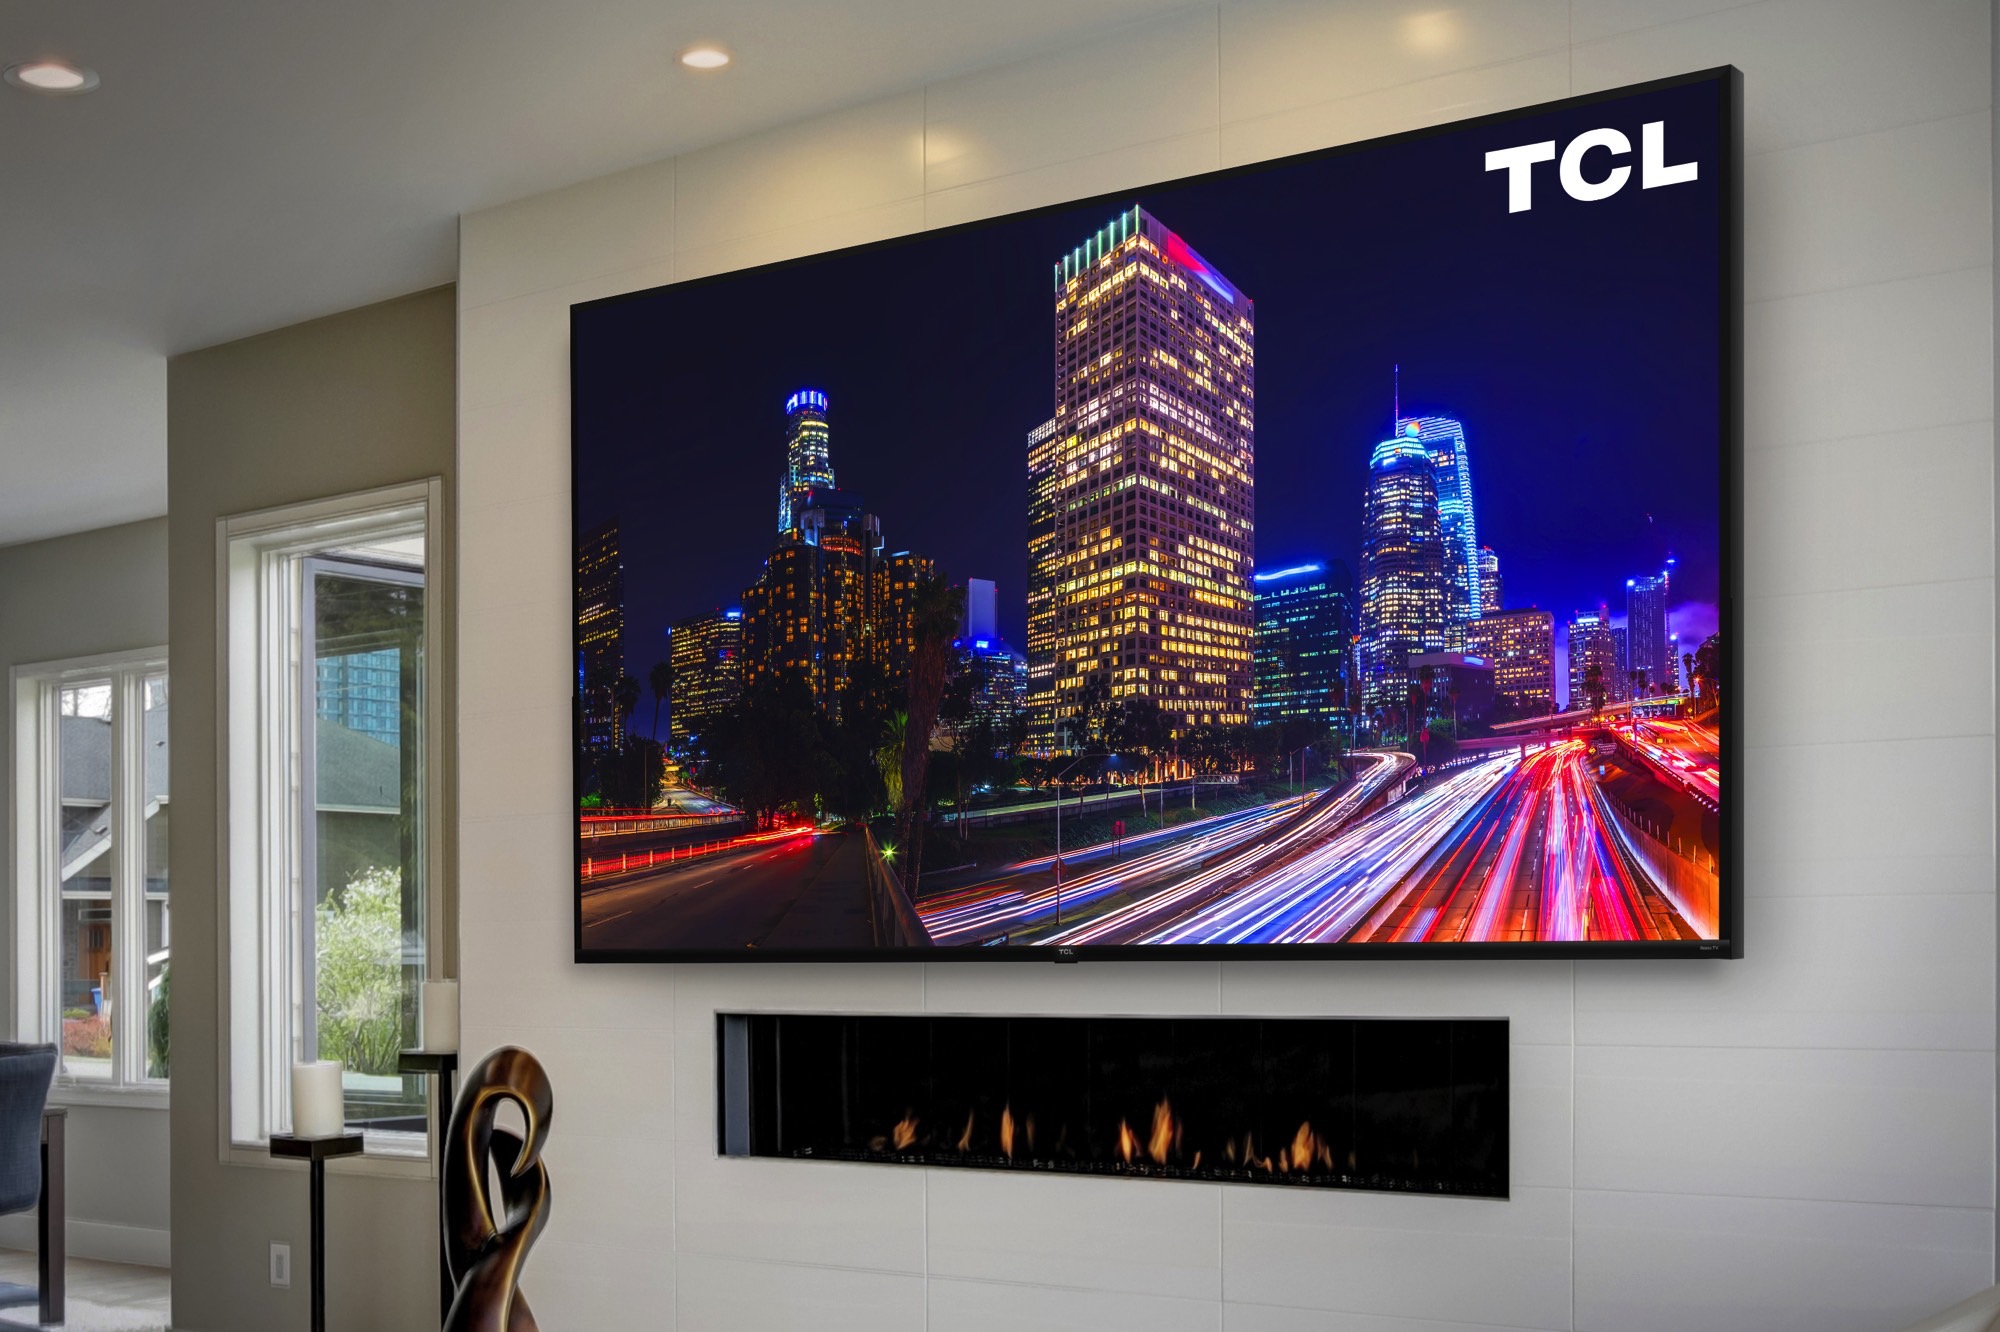 Coleção TCL 85s435 XL TV LED de 85 polegadas